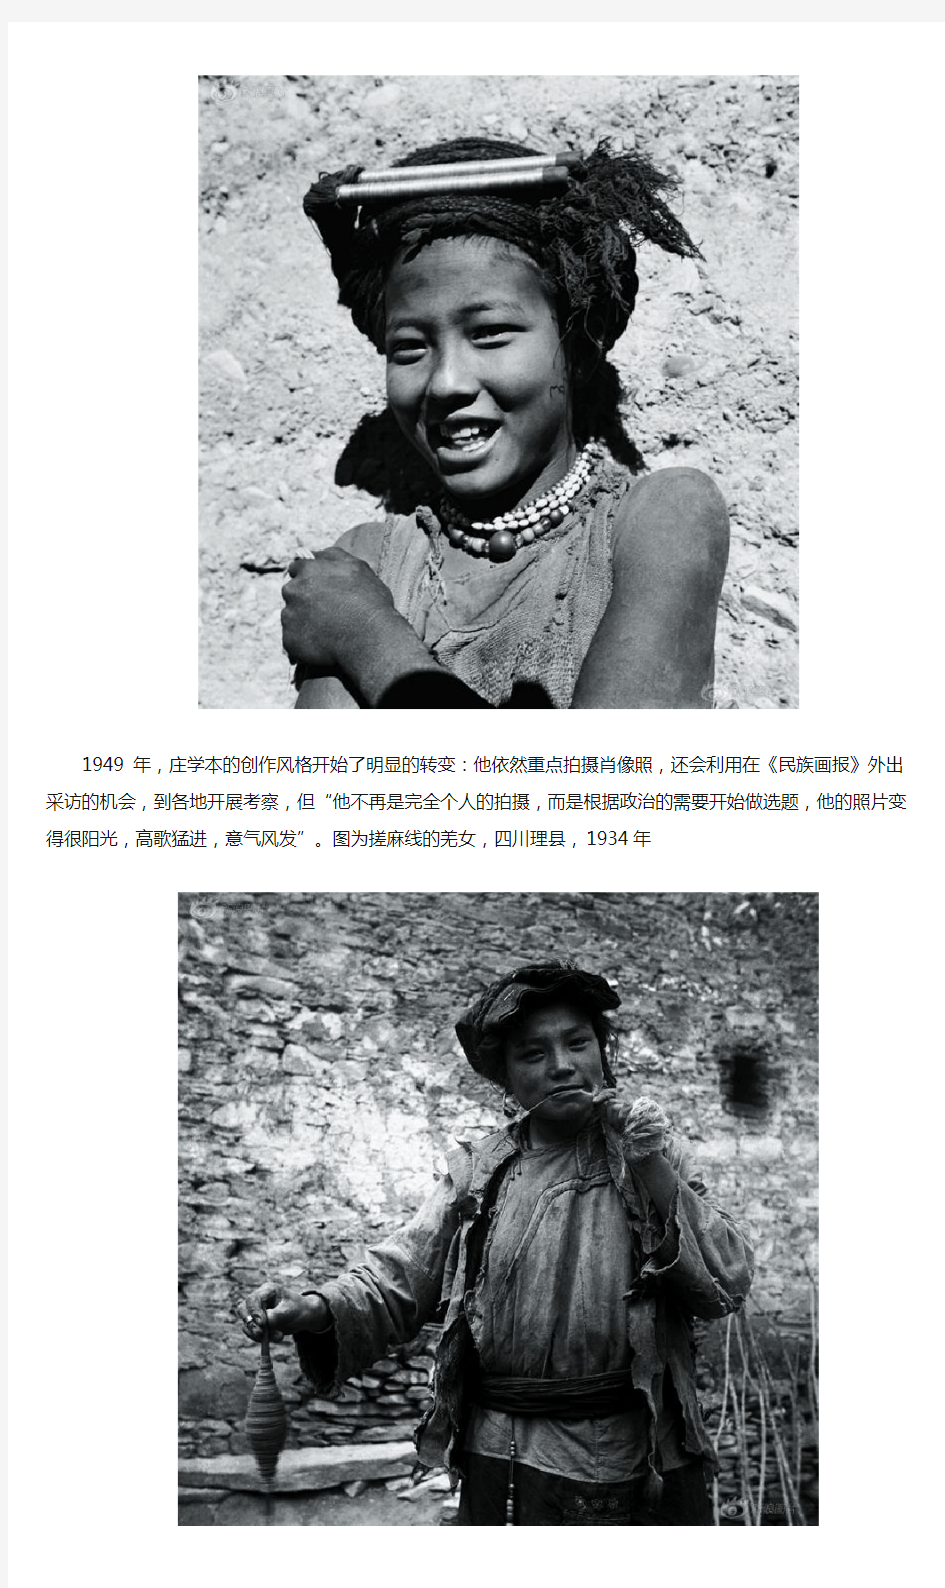 震撼!中国摄影史上失踪的大师作品